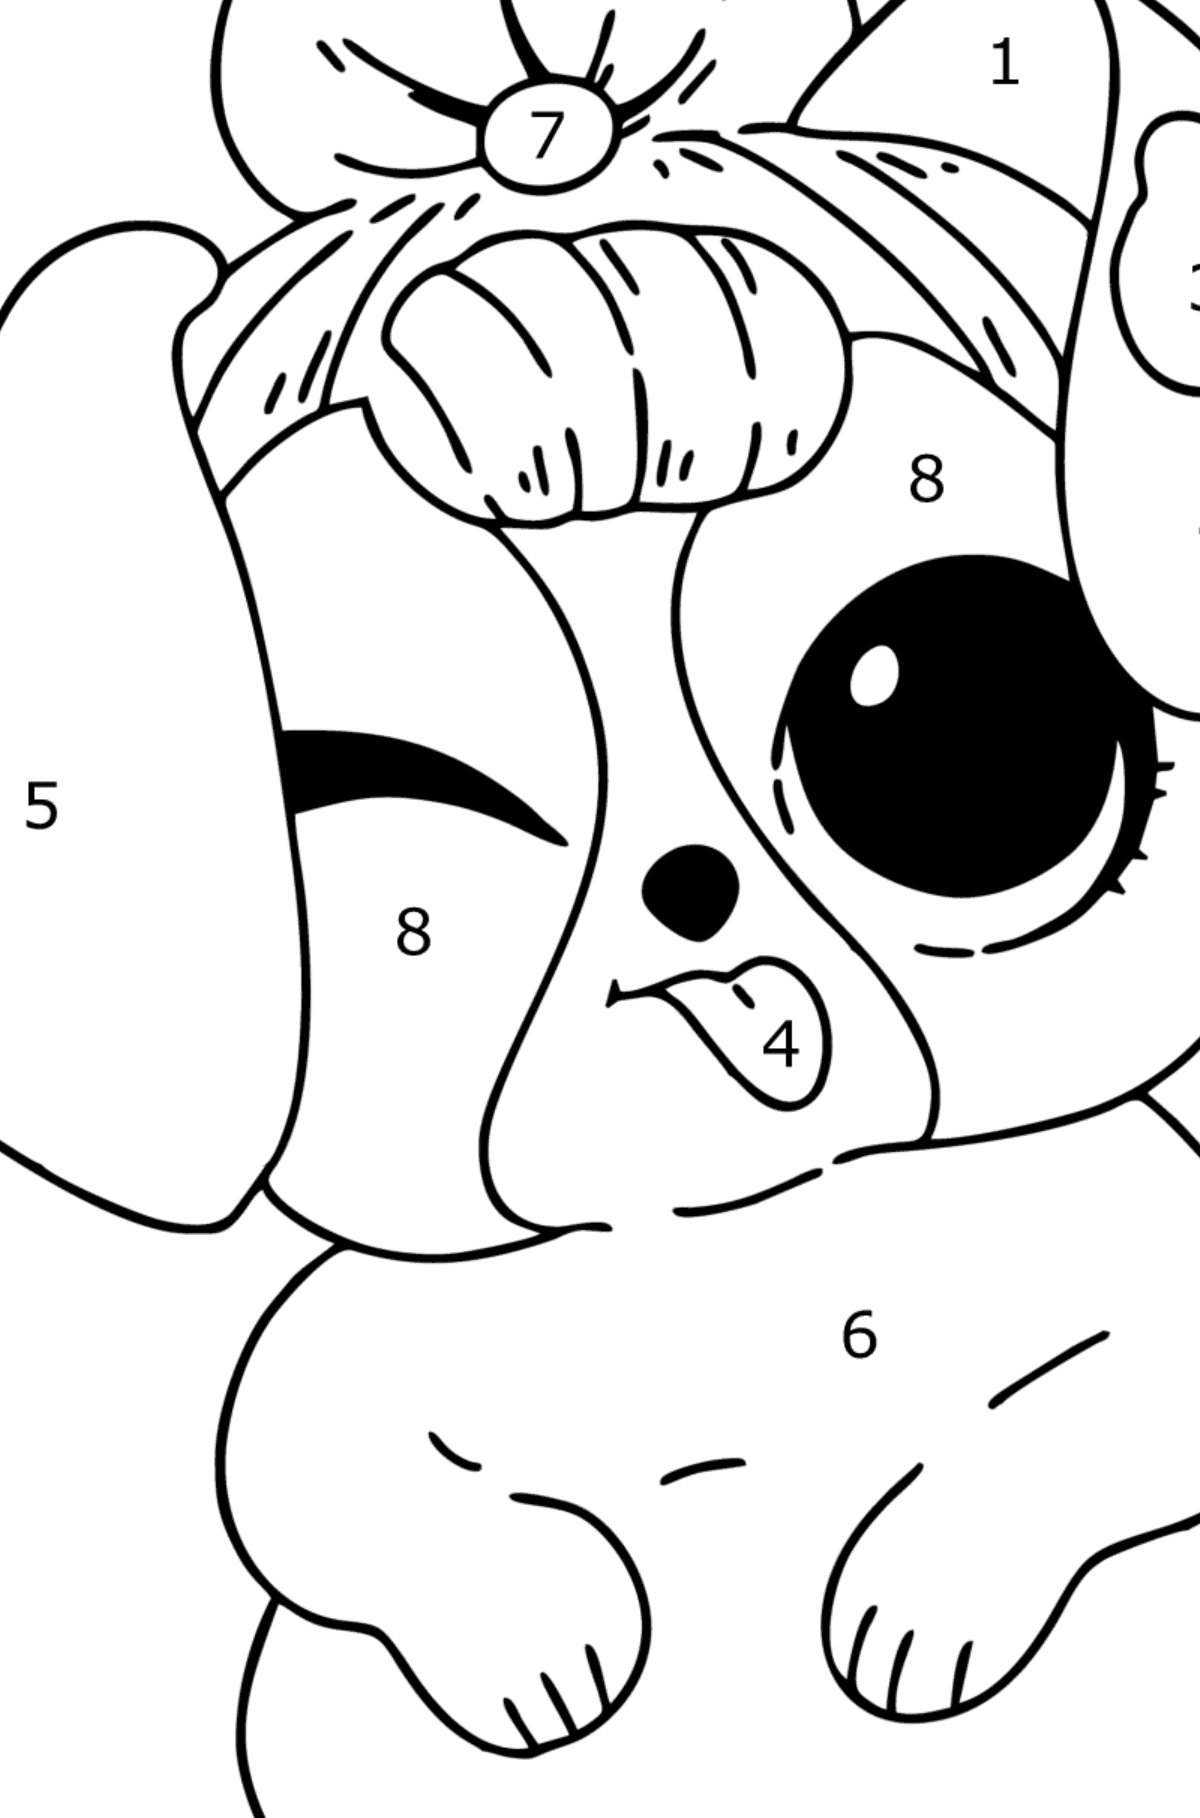 Boyama sayfası Oyuncak bebek Pet Cute Puppy de LOL Surprise - Sayılarla Boyama çocuklar için